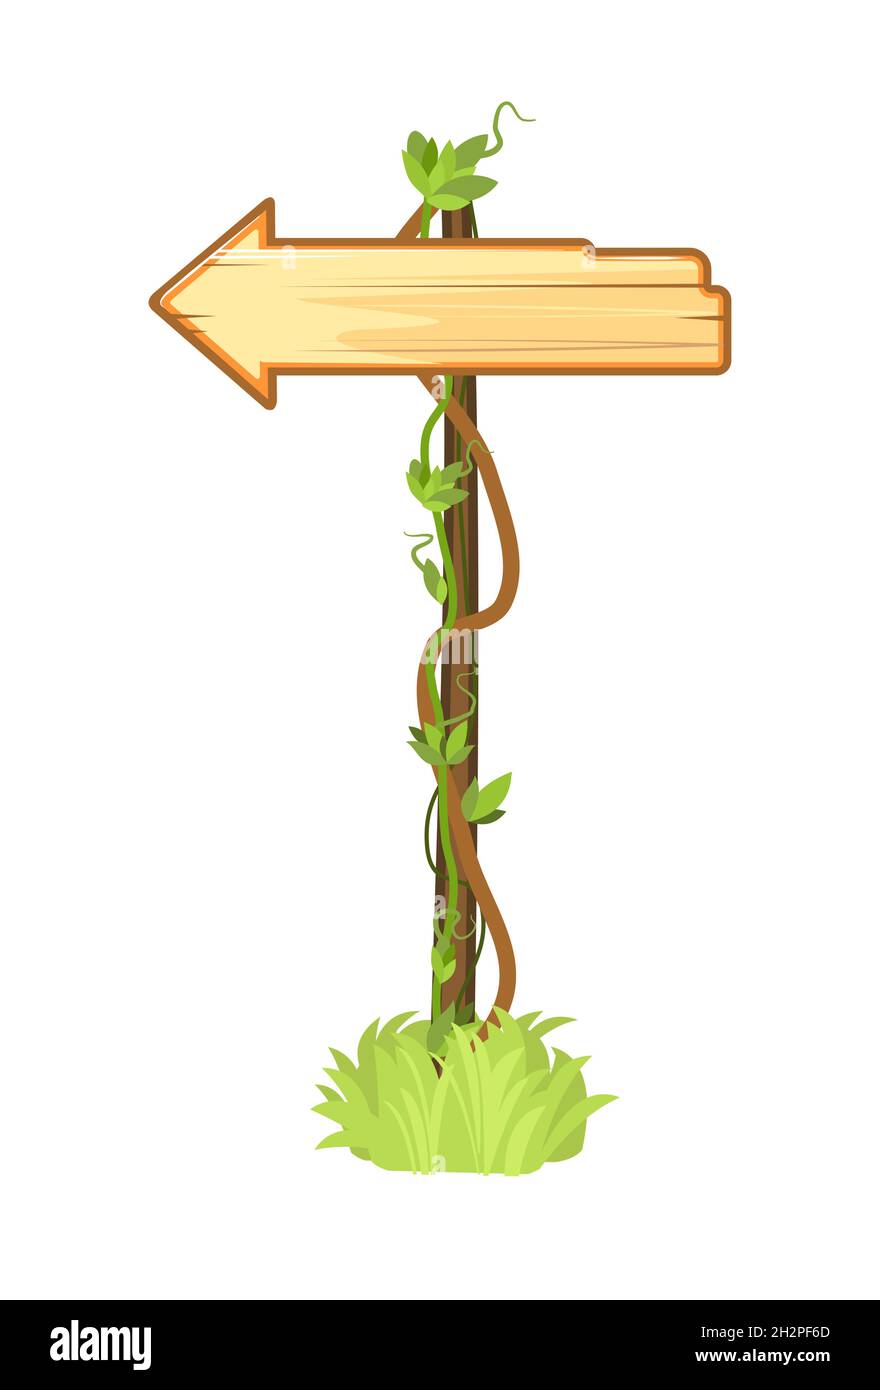 Holzschild im Dschungel. Richtungsanzeige. Leeres Brett mit Platz für Text. Mit Holzstruktur. Cartoon-Stil. Isoliert auf weißem Hintergrund Stock Vektor